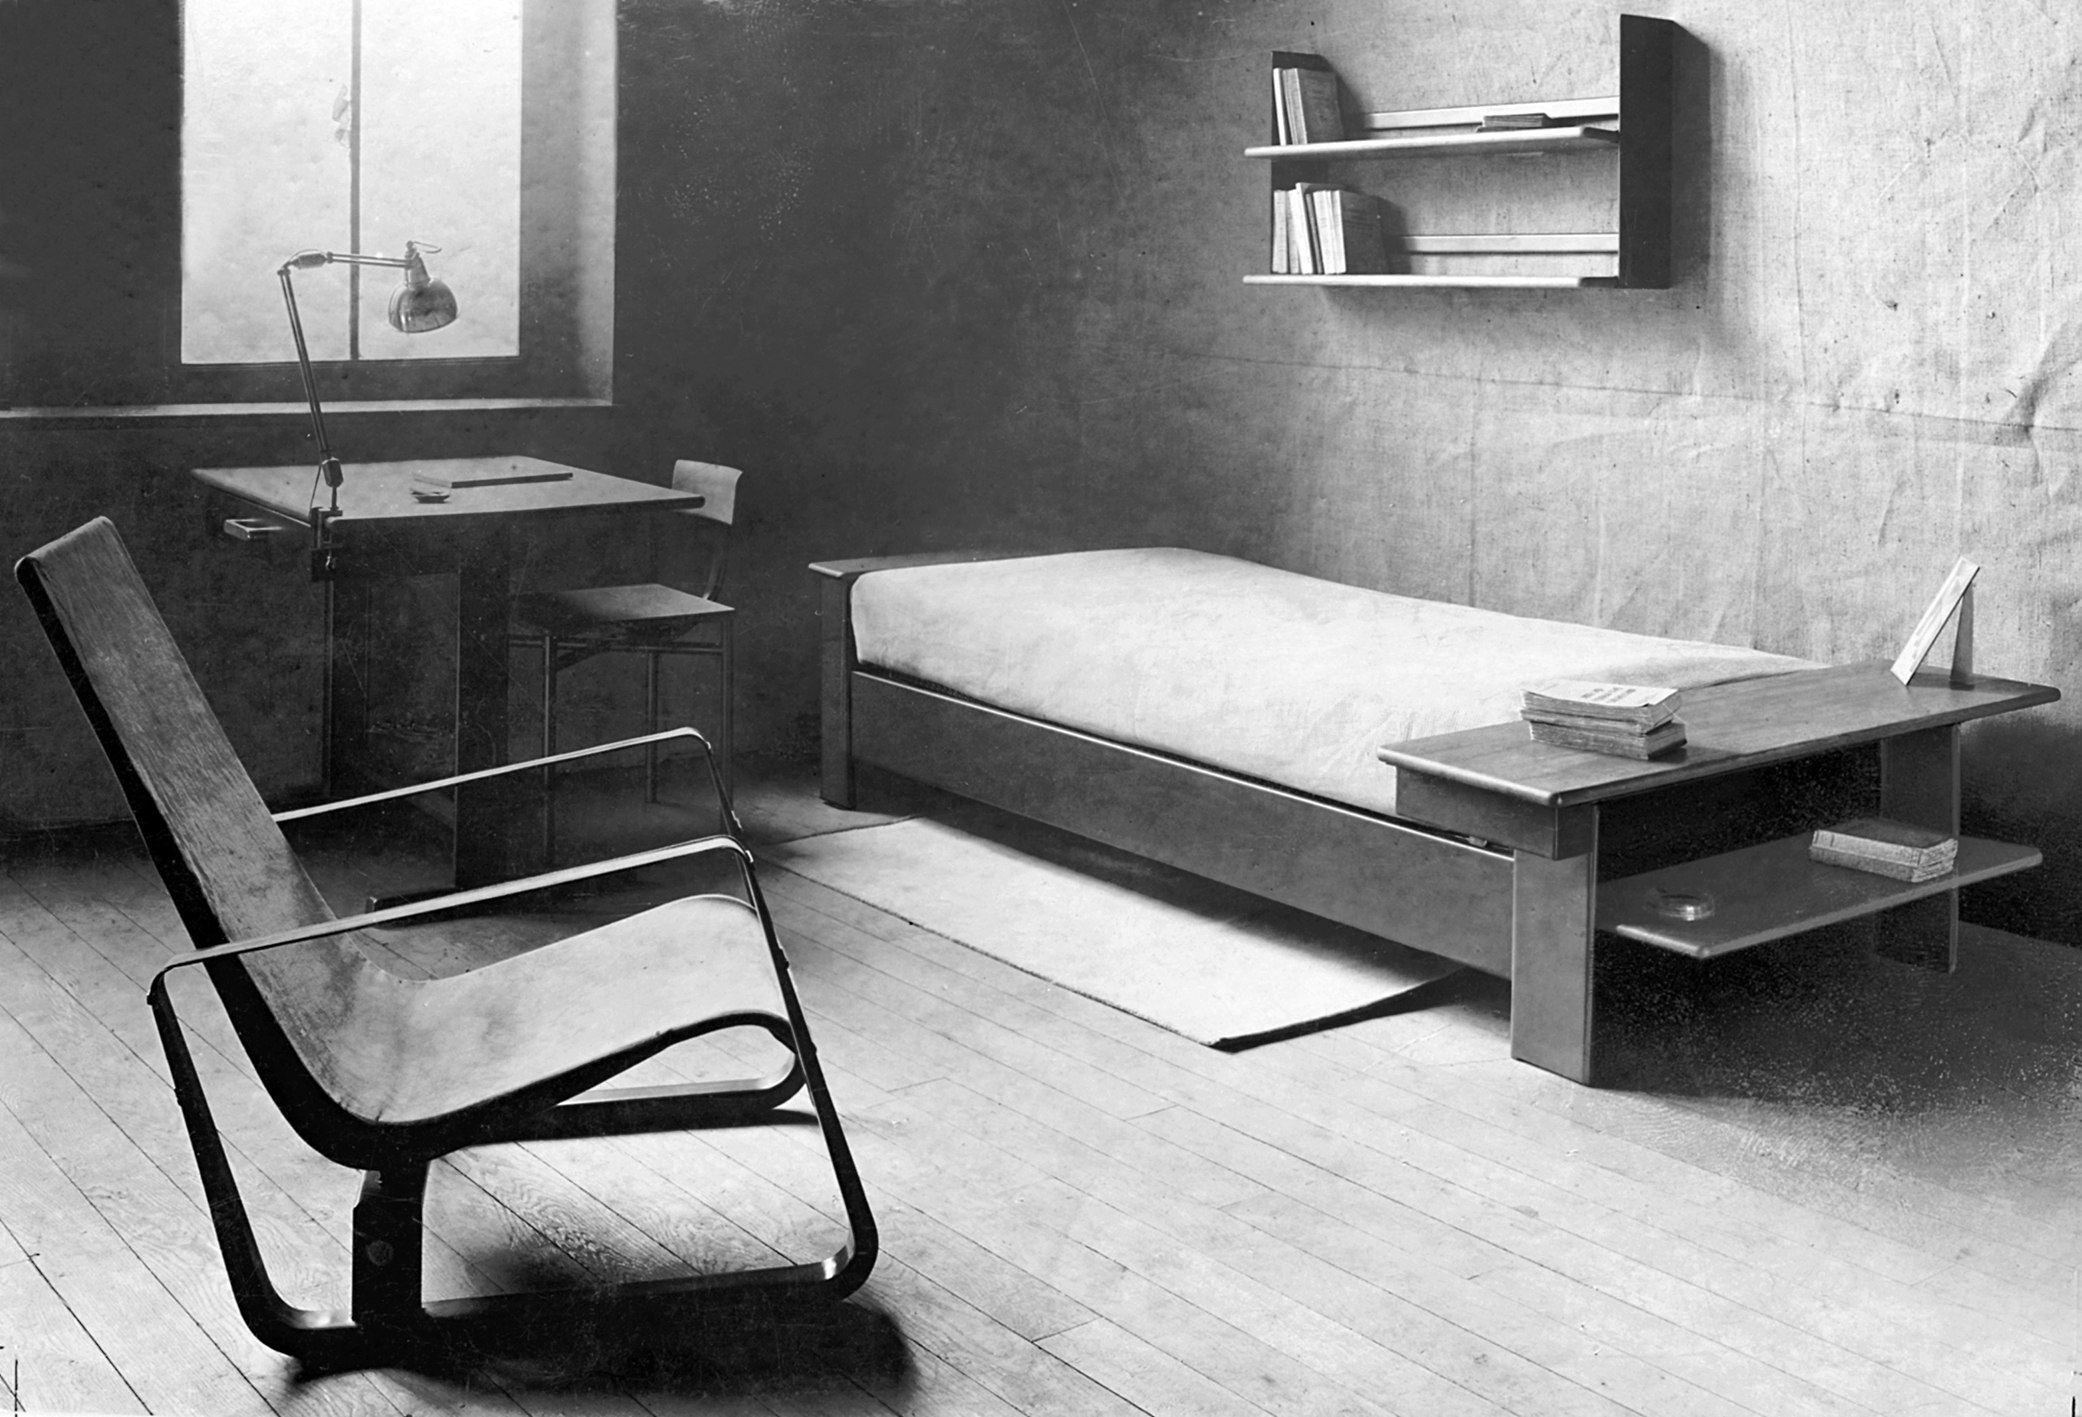 Chambre prototype présentée par Jean Prouvé au concours pour l’ameublement de la cité universitaire de Nancy, c. 1930.